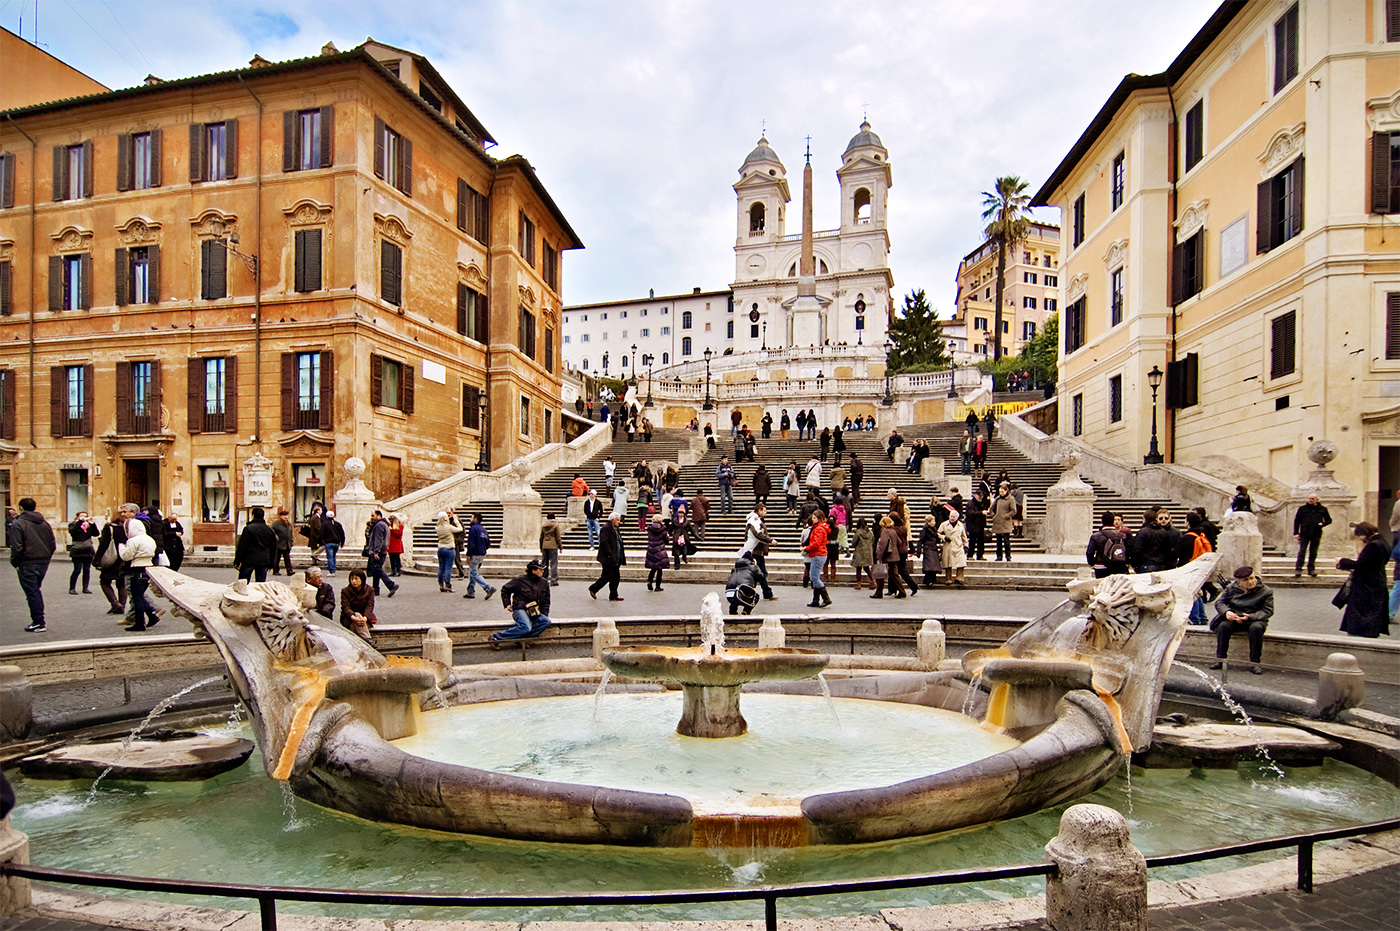 Piazza di Spagna with the famous fountain of la Barcaccia and the steps of Trinità di Monti